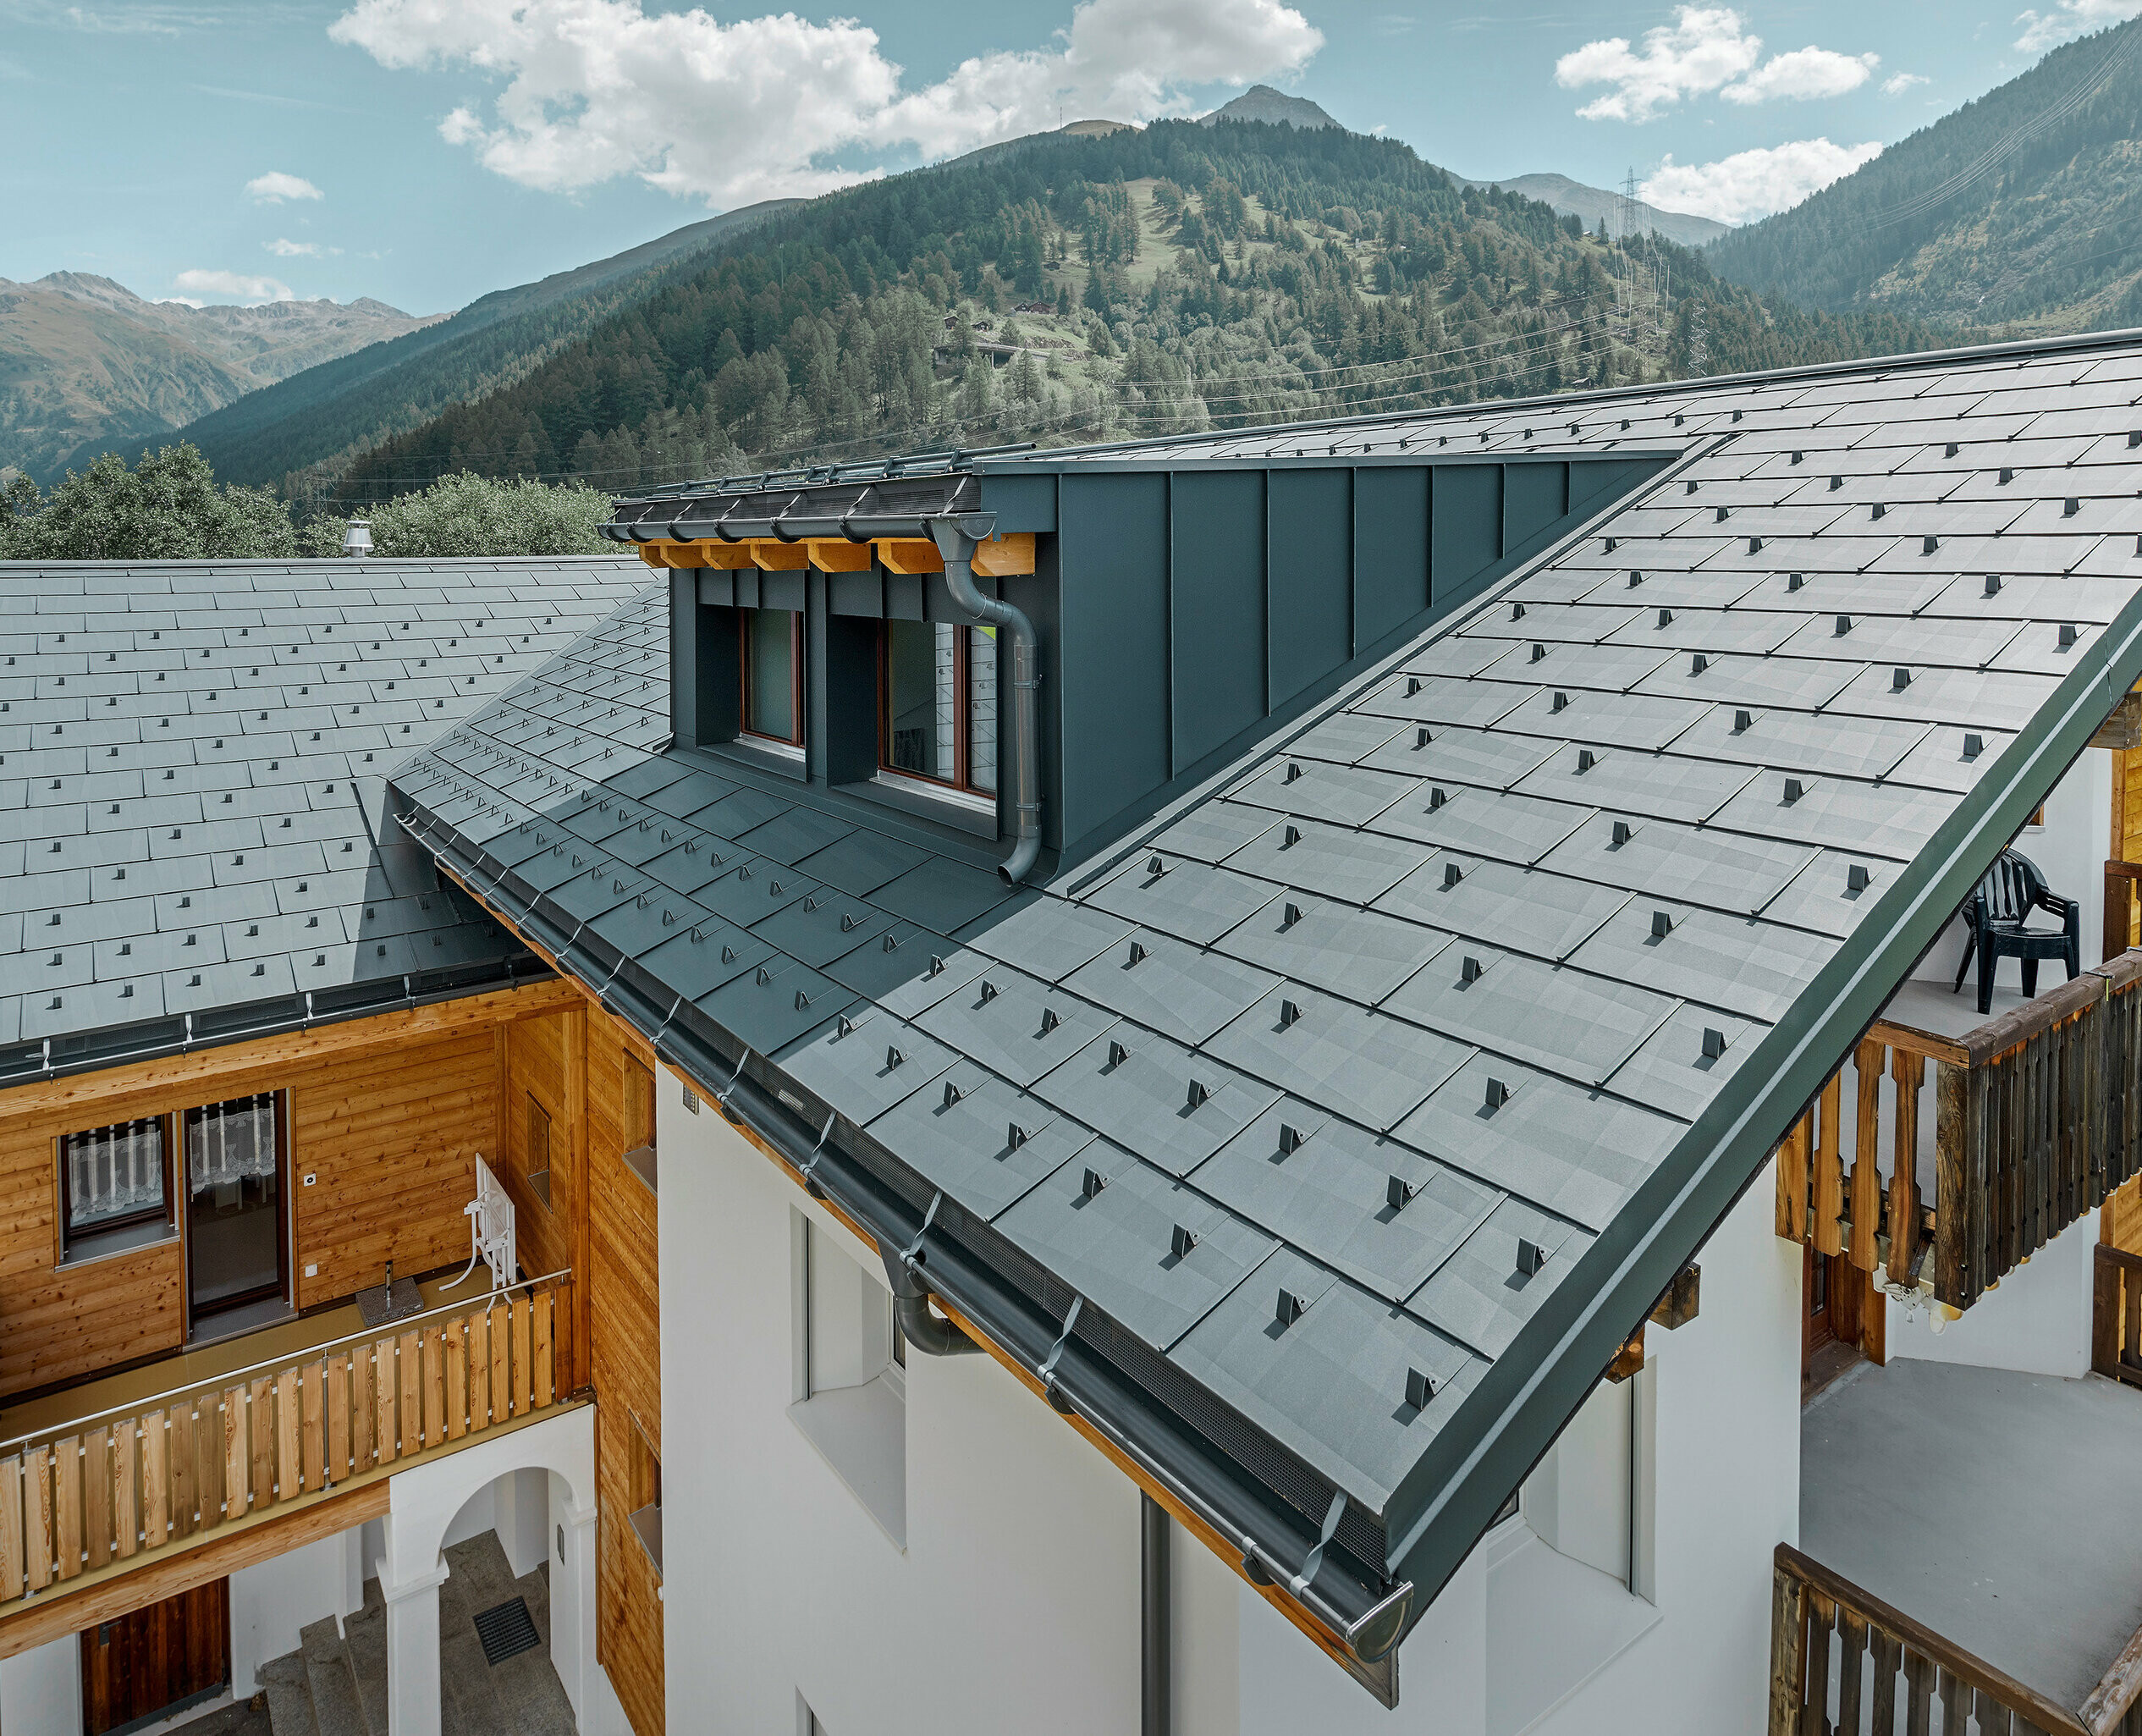 Višestambena zgrada s krovnom kućicom i dvostrešnim krovom, pokrivena PREFA krovnim panelom FX.12 u antracit boji; u pozadini su vidljive planine;